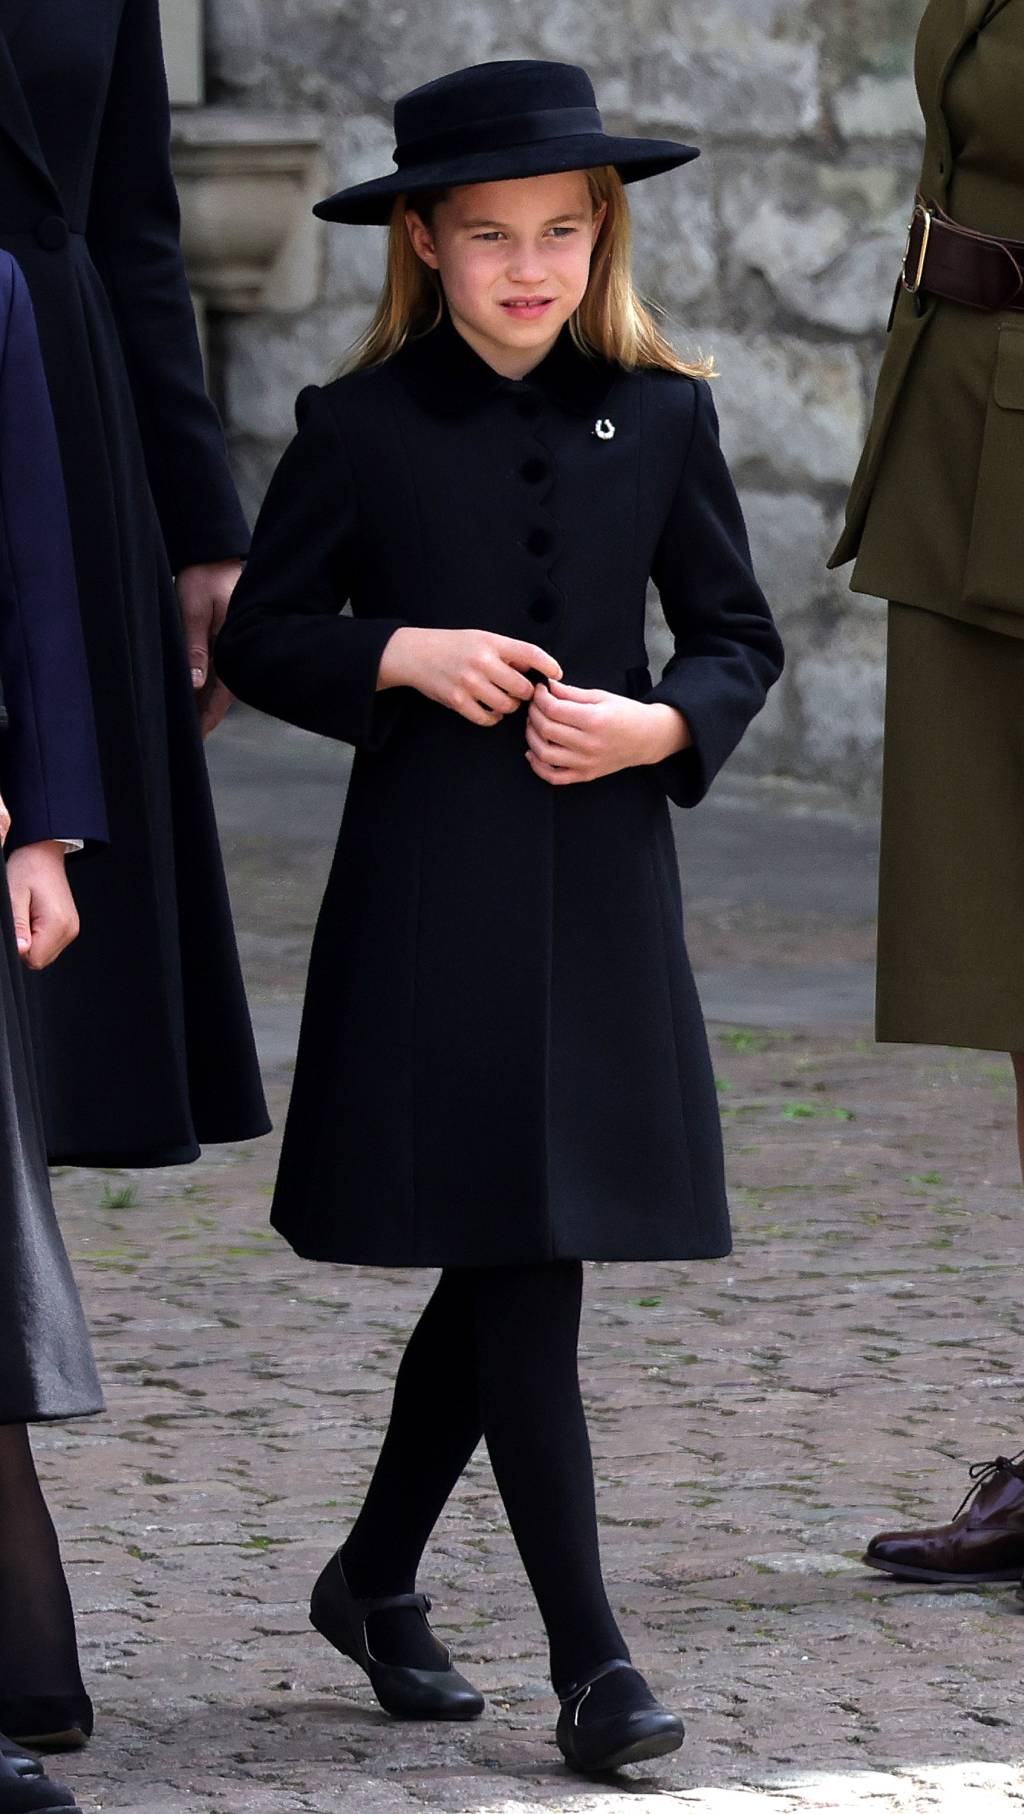 A princesa Charlotte de Gales é vista durante o funeral de estado da rainha Elizabeth II na Abadia de Westminster em Londres, Inglaterra. 19/09/2022